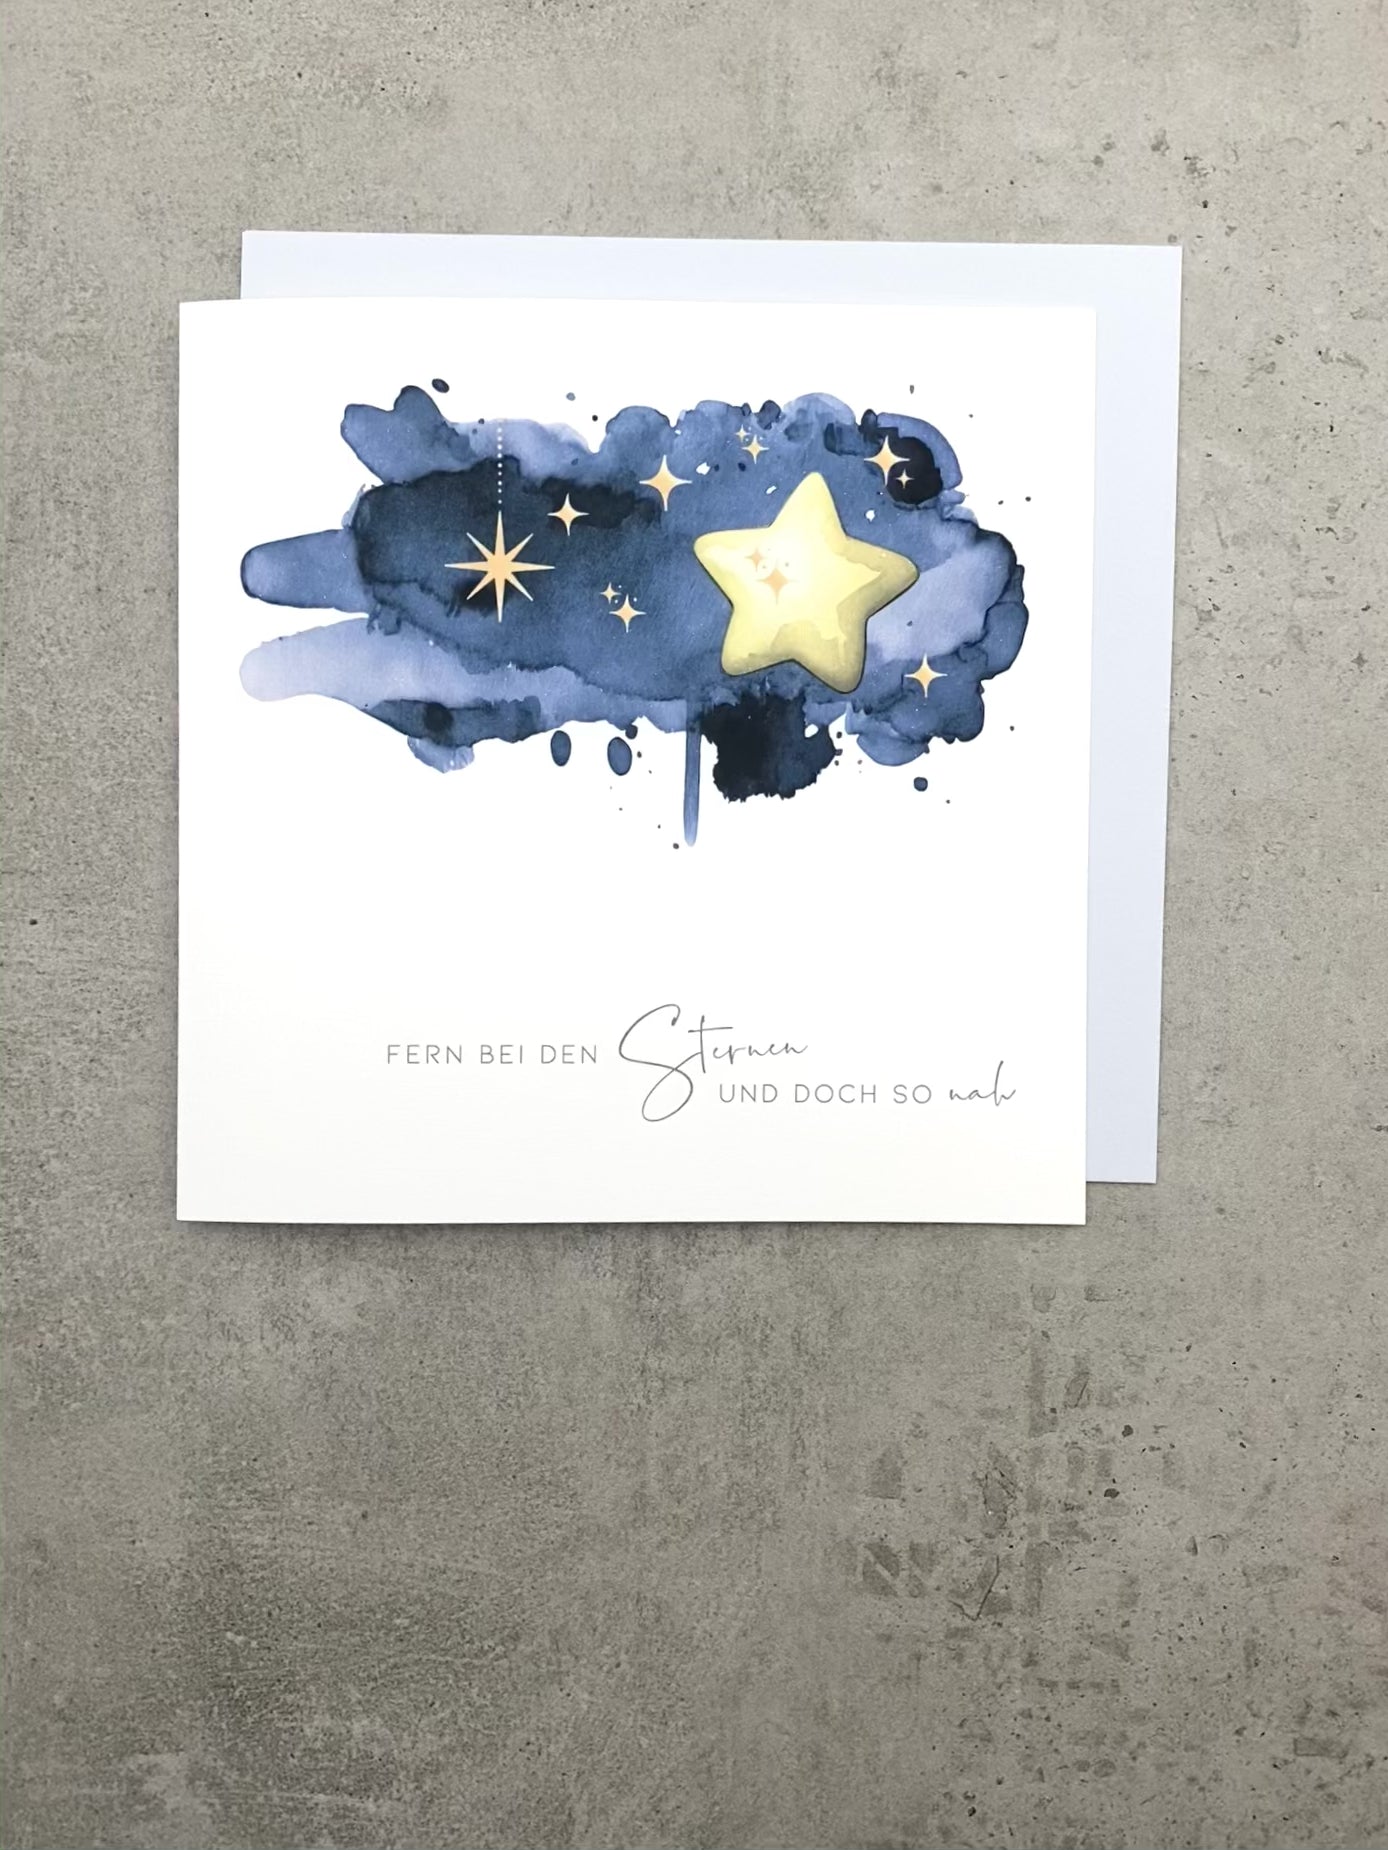 Trauerkarte Sternenkind zum aufklappen mit dunkelblauer Zeichnung mit Text "Fern bei den Sternen und doch so nah"